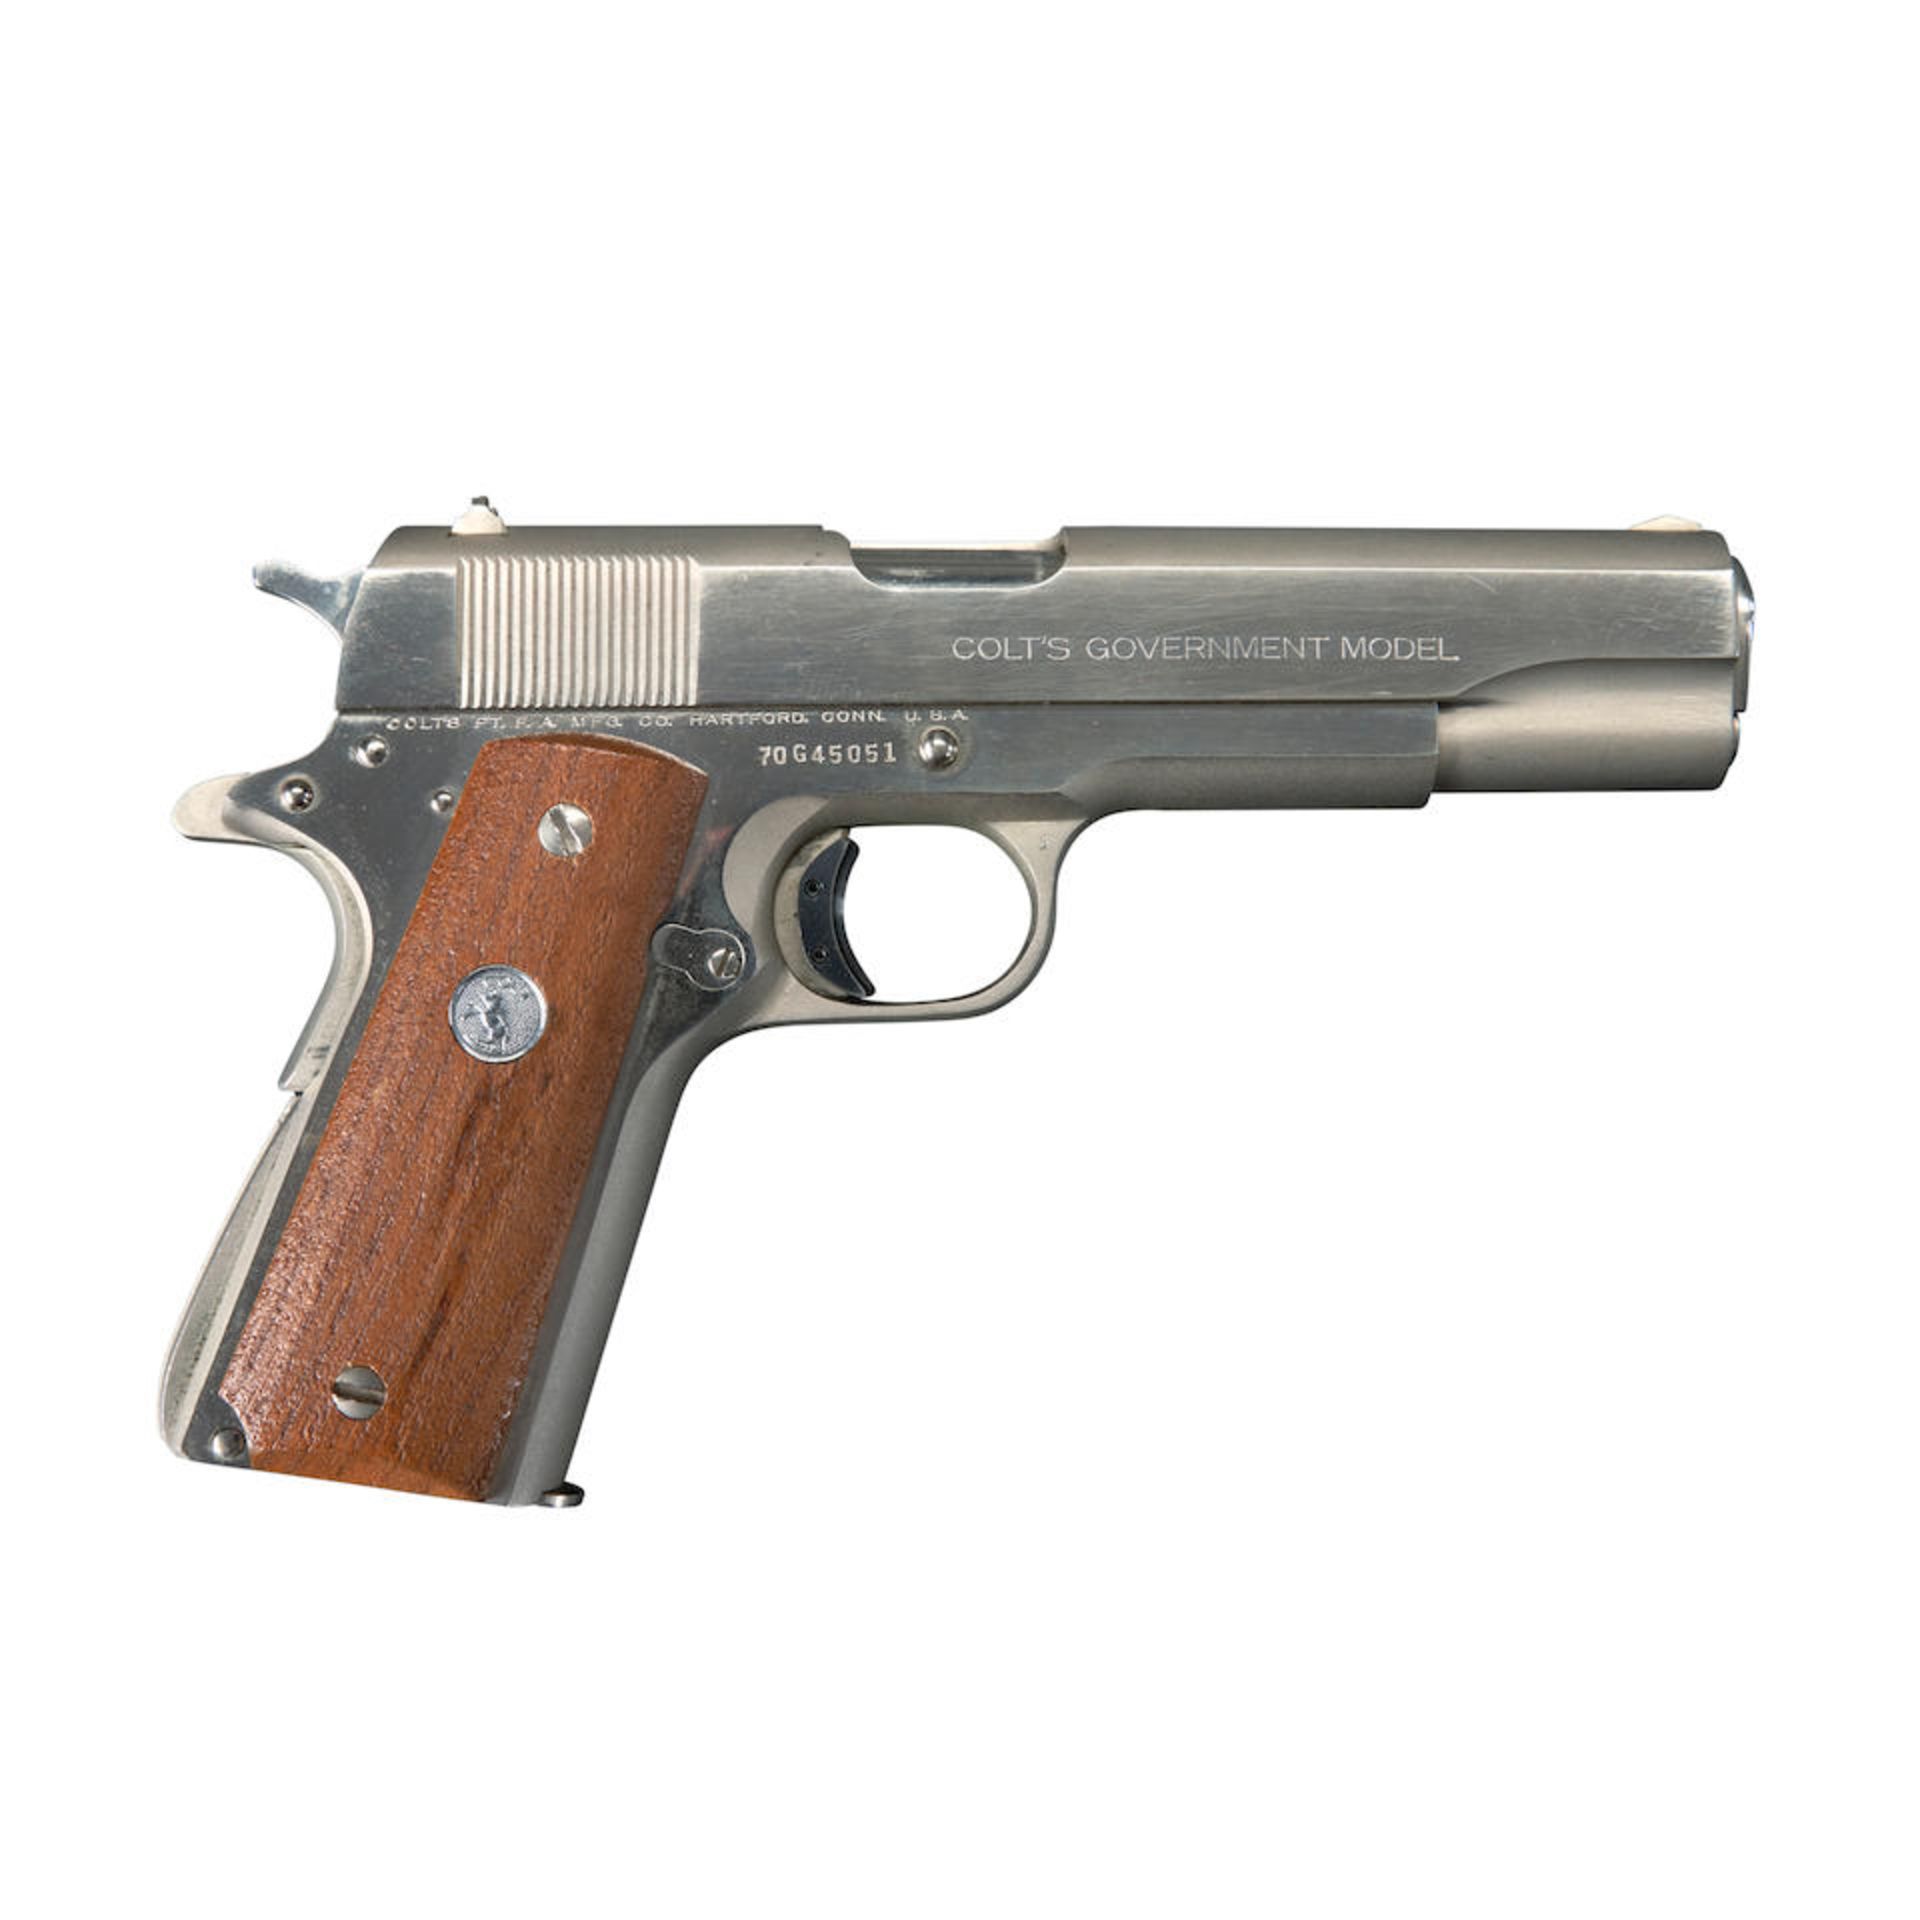 Colt MK IV/Series 70 Government Model Semi-Automatic Pistol, Curio or Relic firearm - Bild 4 aus 4